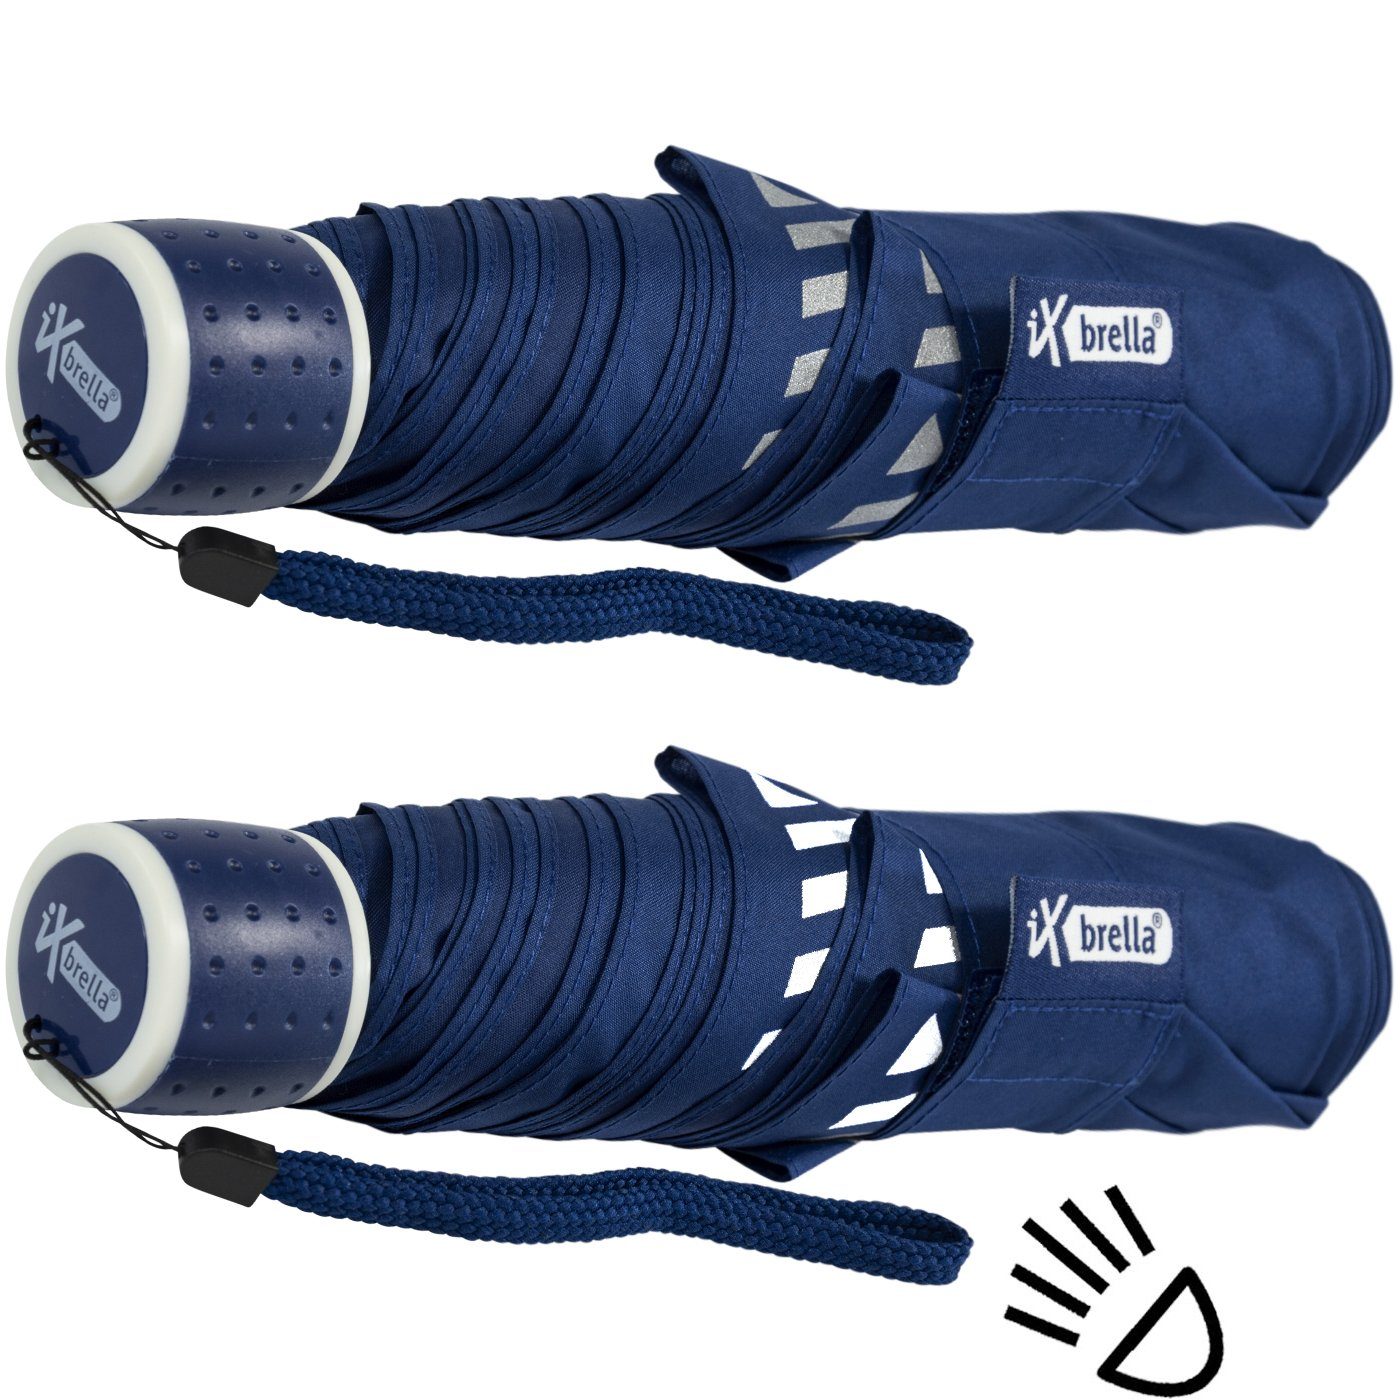 iX-brella Taschenregenschirm Mini Kinderschirm Safety blau extra reflektierend Reflex leicht